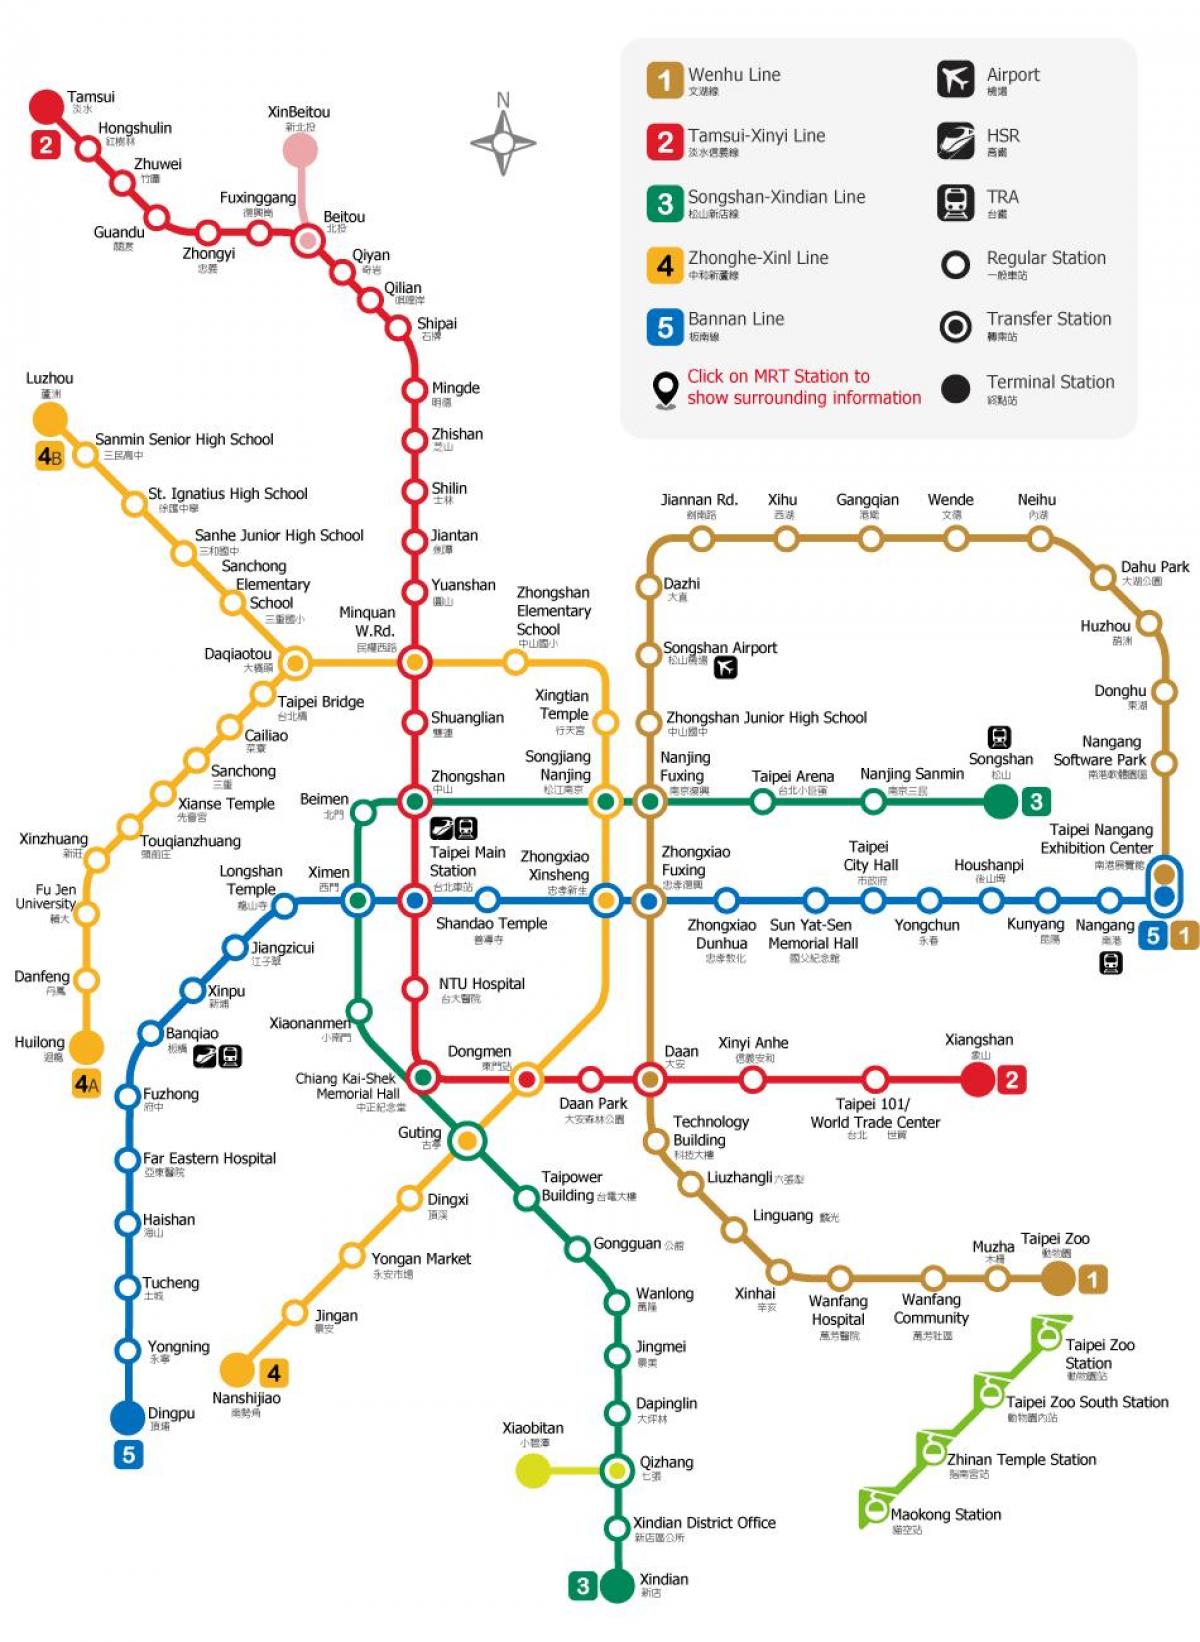 Taipėjus rapid transit žemėlapyje